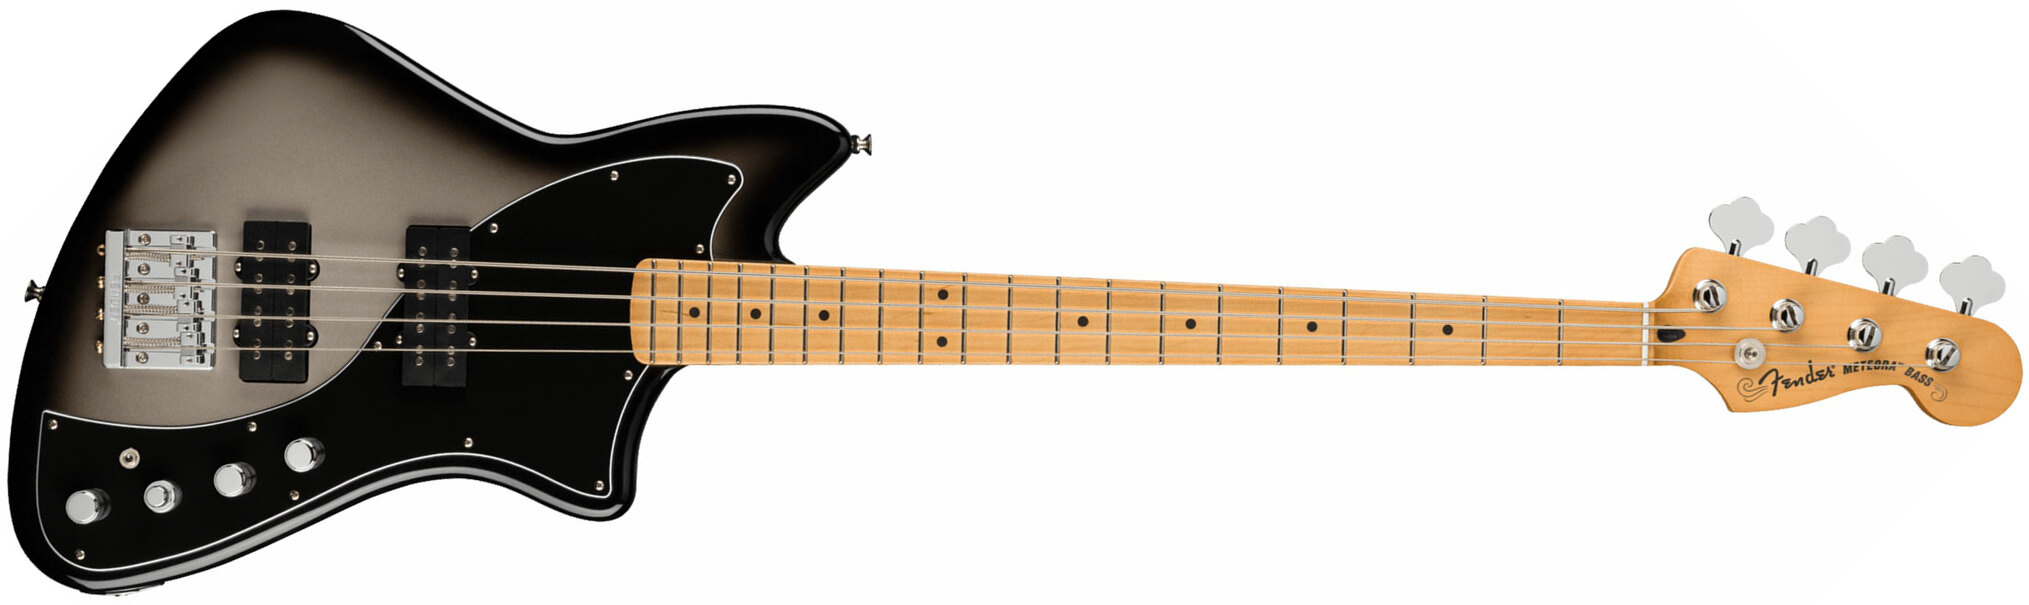 Fender Meteora Bass Active Player Plus Mex Mn - Silver Burst - Basse Électrique Solid Body - Main picture